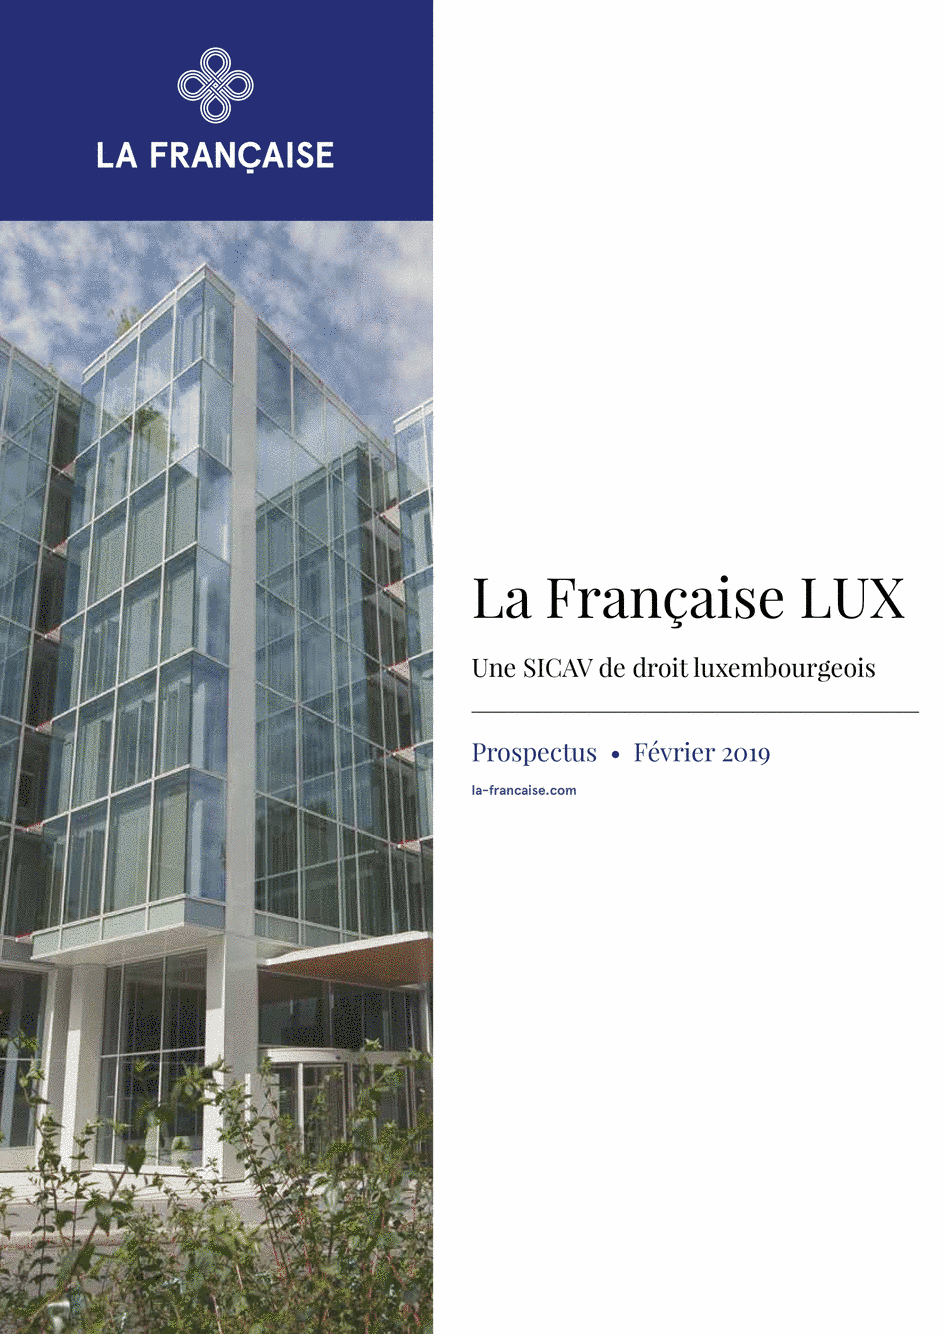 Prospectus La Française LUX - Forum Global Real Estate Securities - R (C) EUR - 01/12/2018 - Français